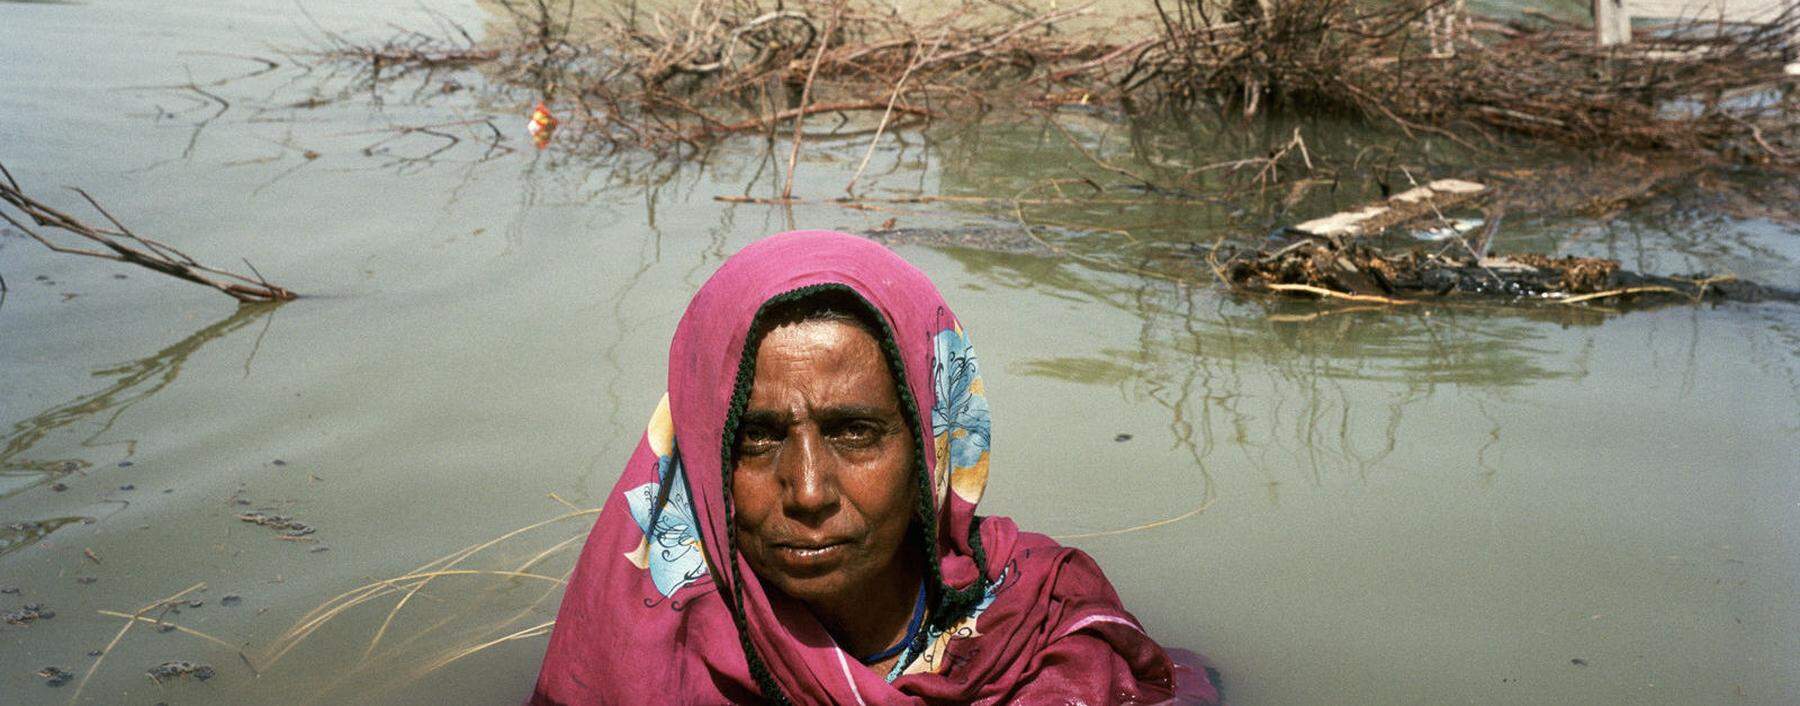 Eine Frau vor ihrem überschwemmten Haus in Pakistan.